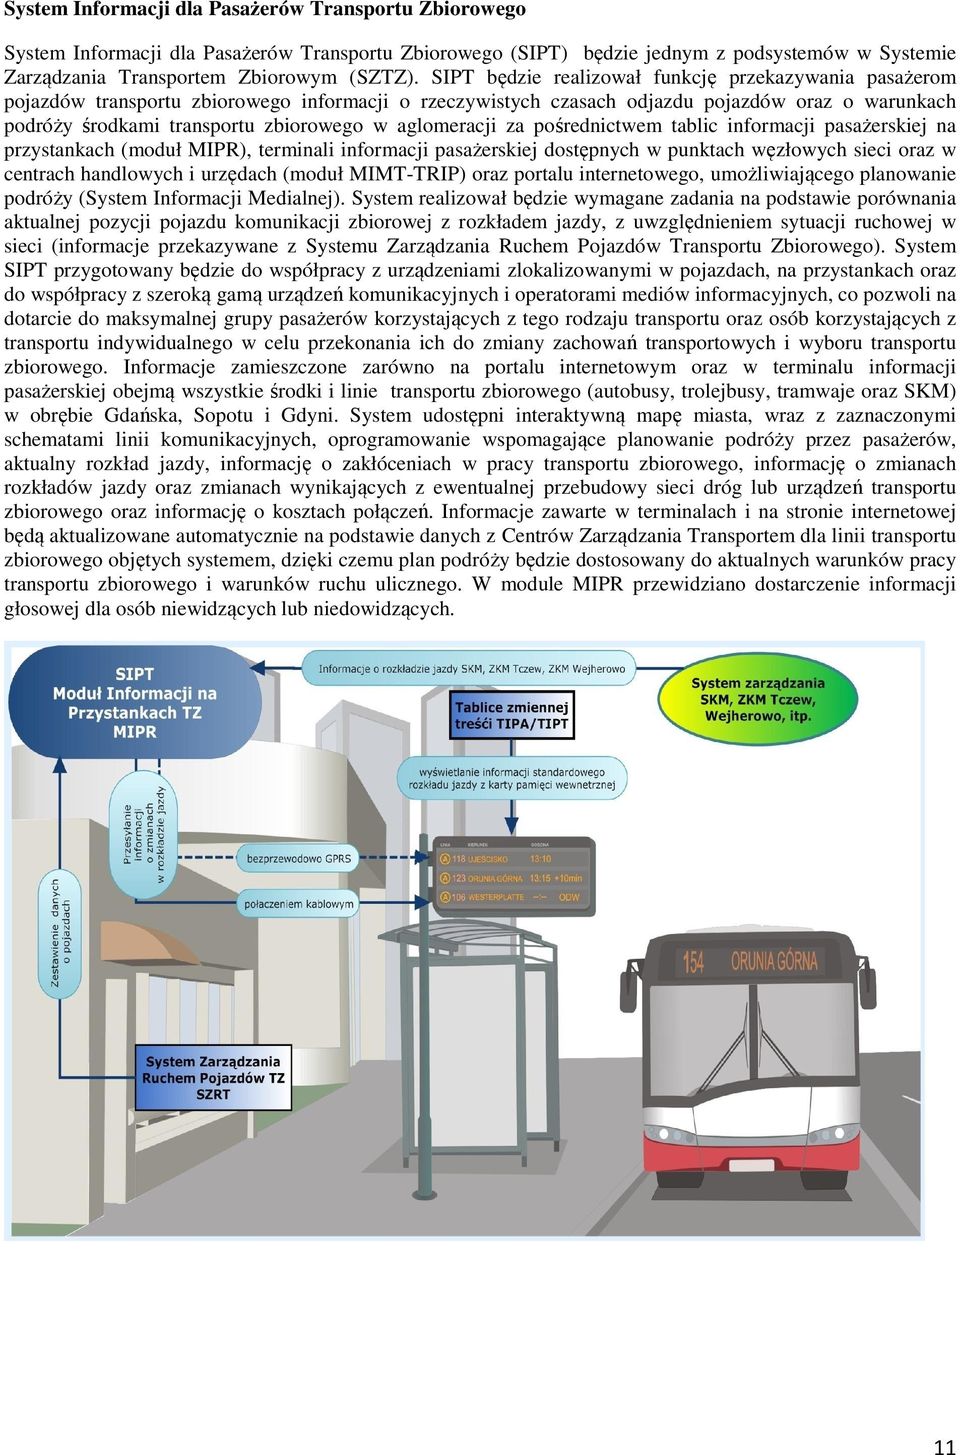 aglomeracji za pośrednictwem tablic informacji pasażerskiej na przystankach (moduł MIPR), terminali informacji pasażerskiej dostępnych w punktach węzłowych sieci oraz w centrach handlowych i urzędach